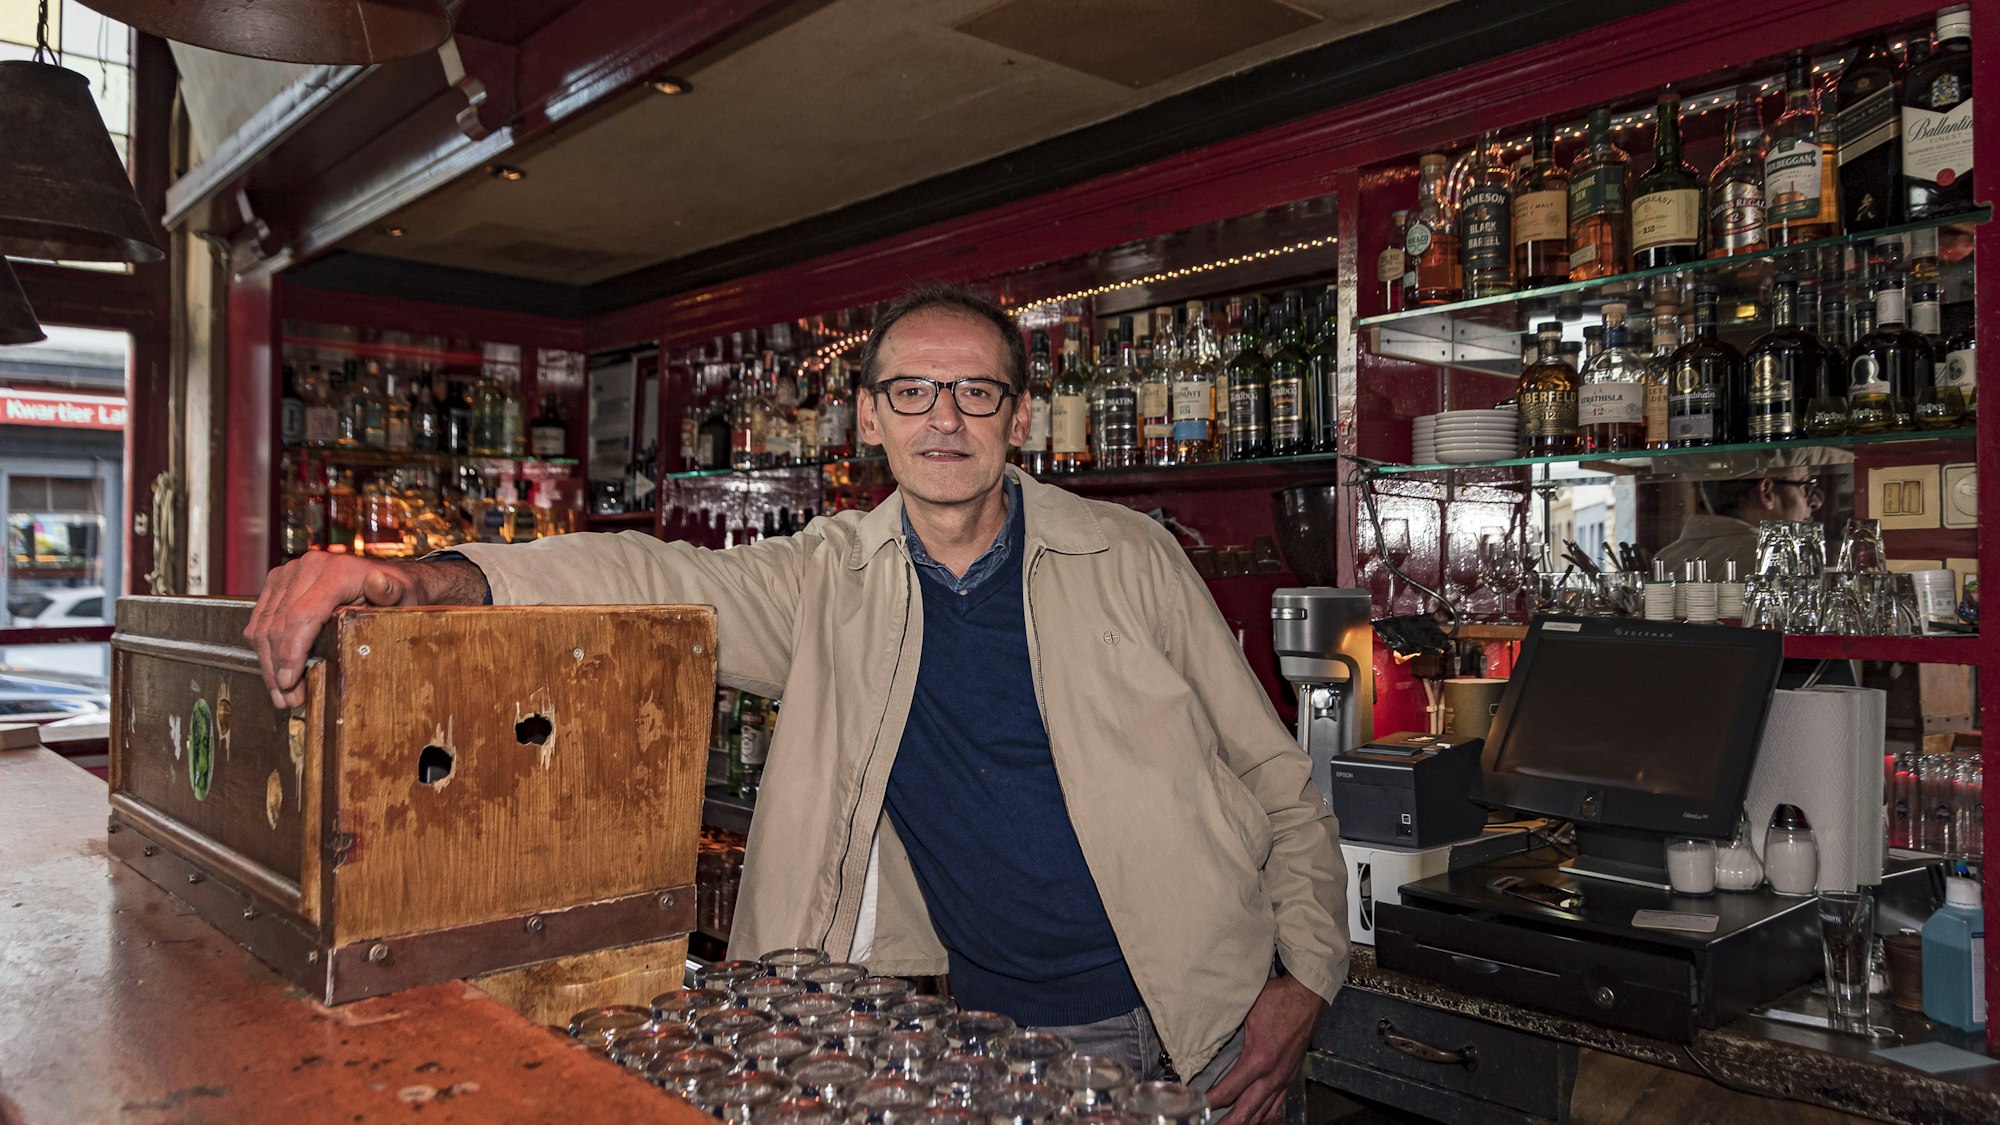 Inhaber Stephan Freund
steht hinter dem Tresen seiner Kölner Bar „Stiefel“.